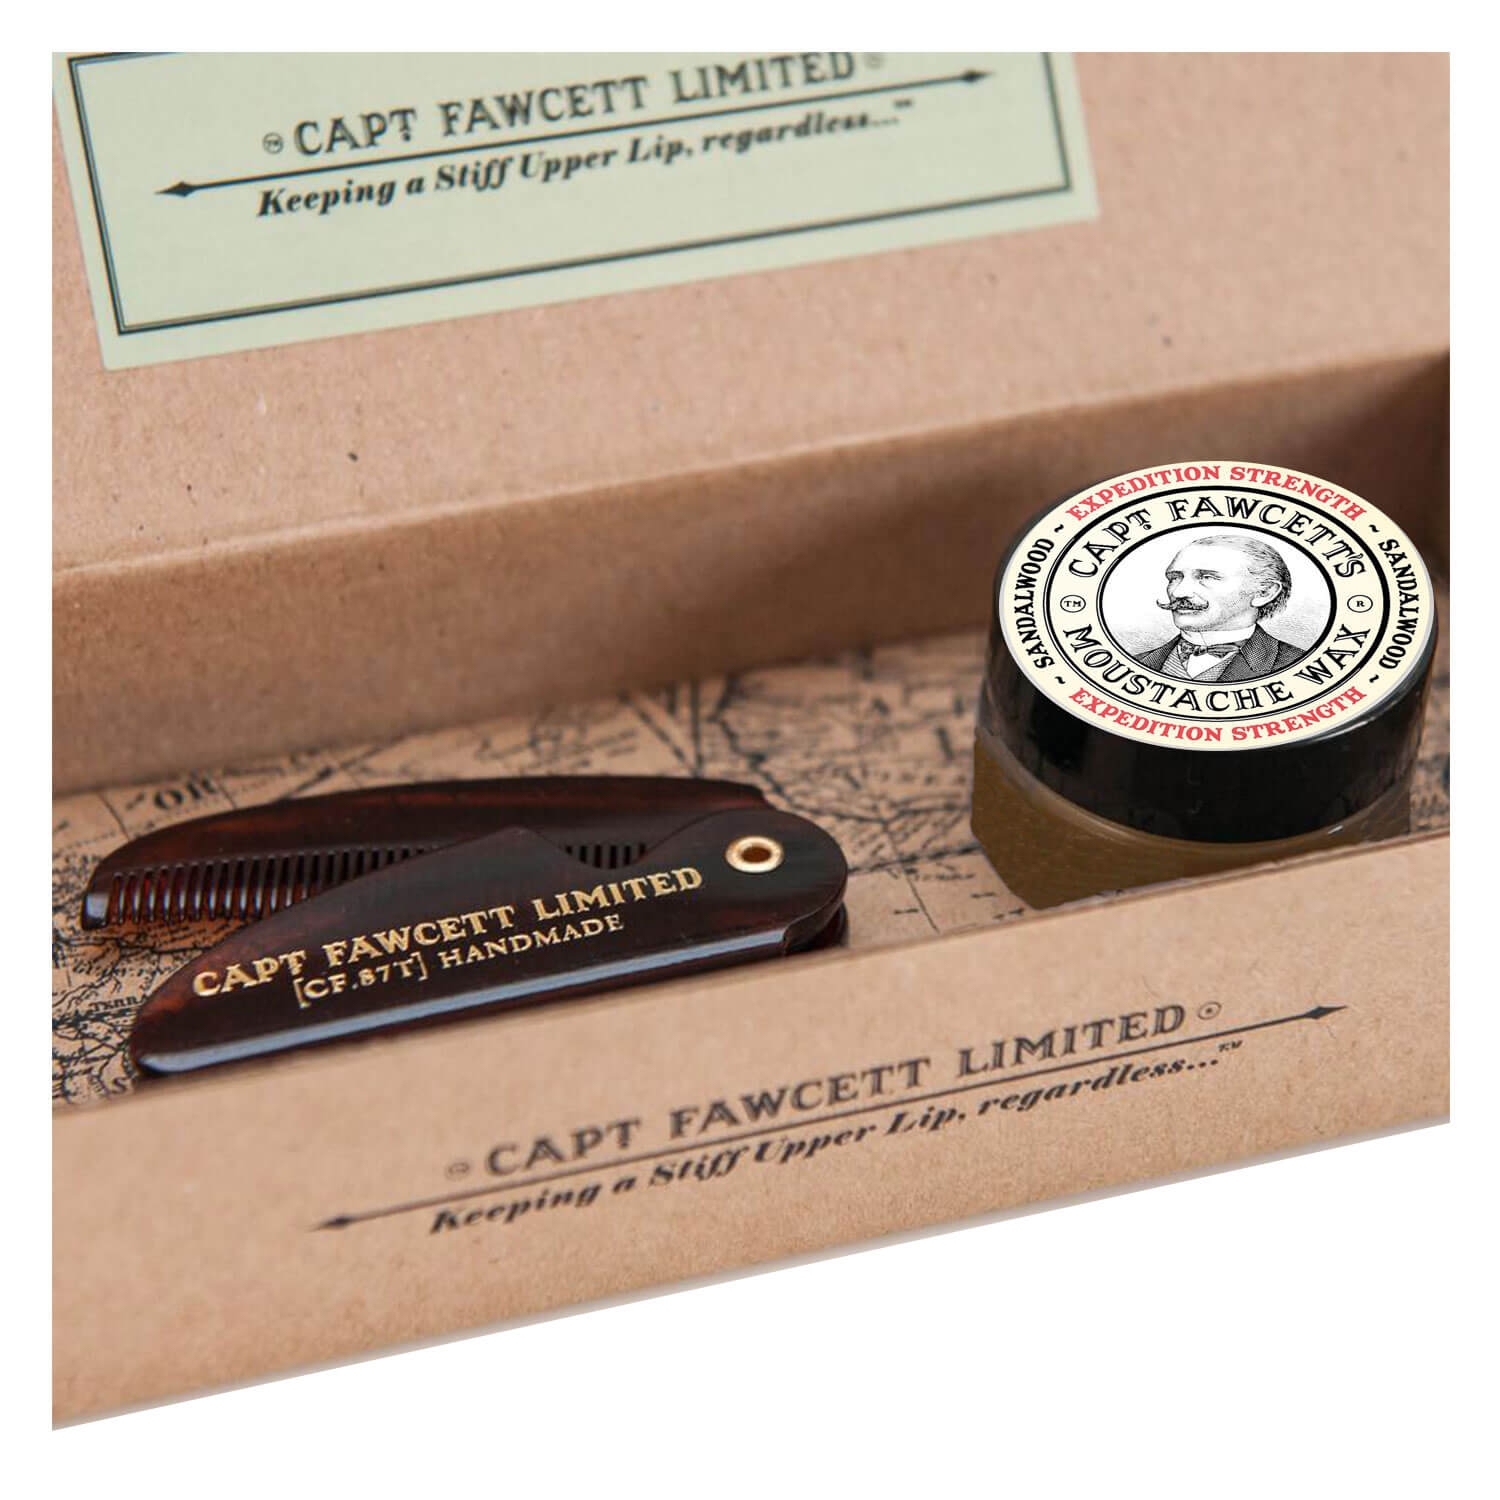 Produktbild von Capt. Fawcett Care - Expedition Strength Moustache Wax & Folding Pocket Moustache Comb Kit